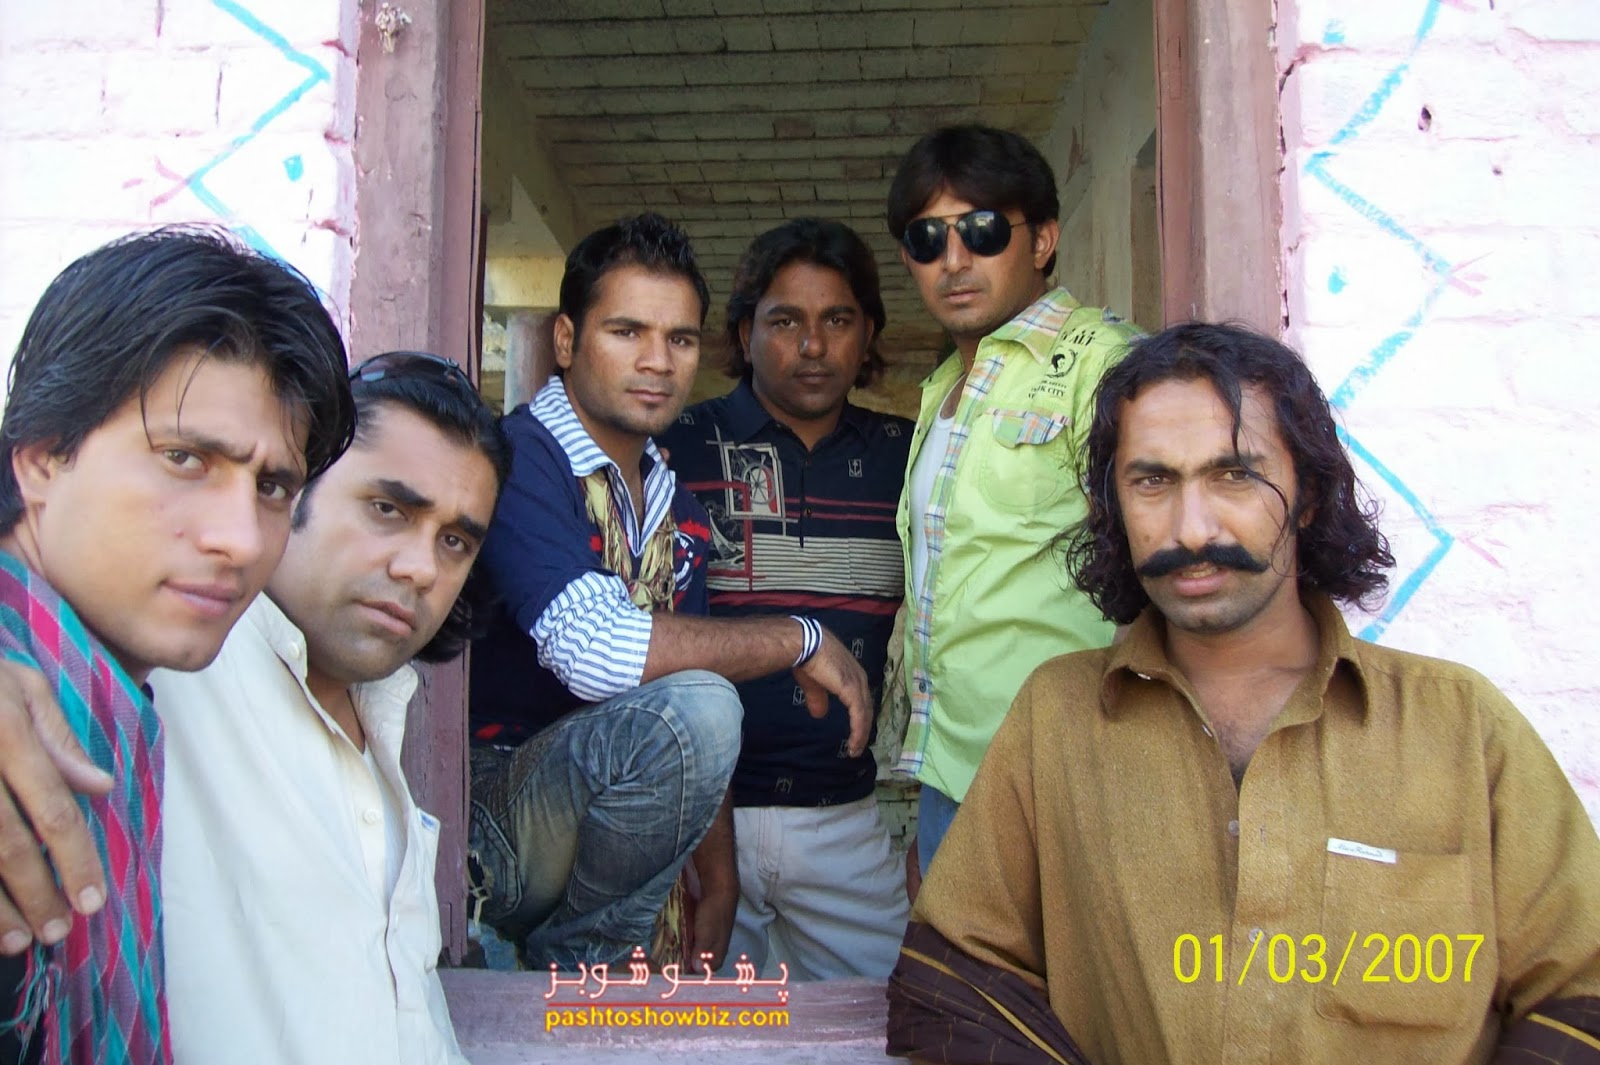 Zeeshan Khan Talash, Janwali Alamzai and Crew Member